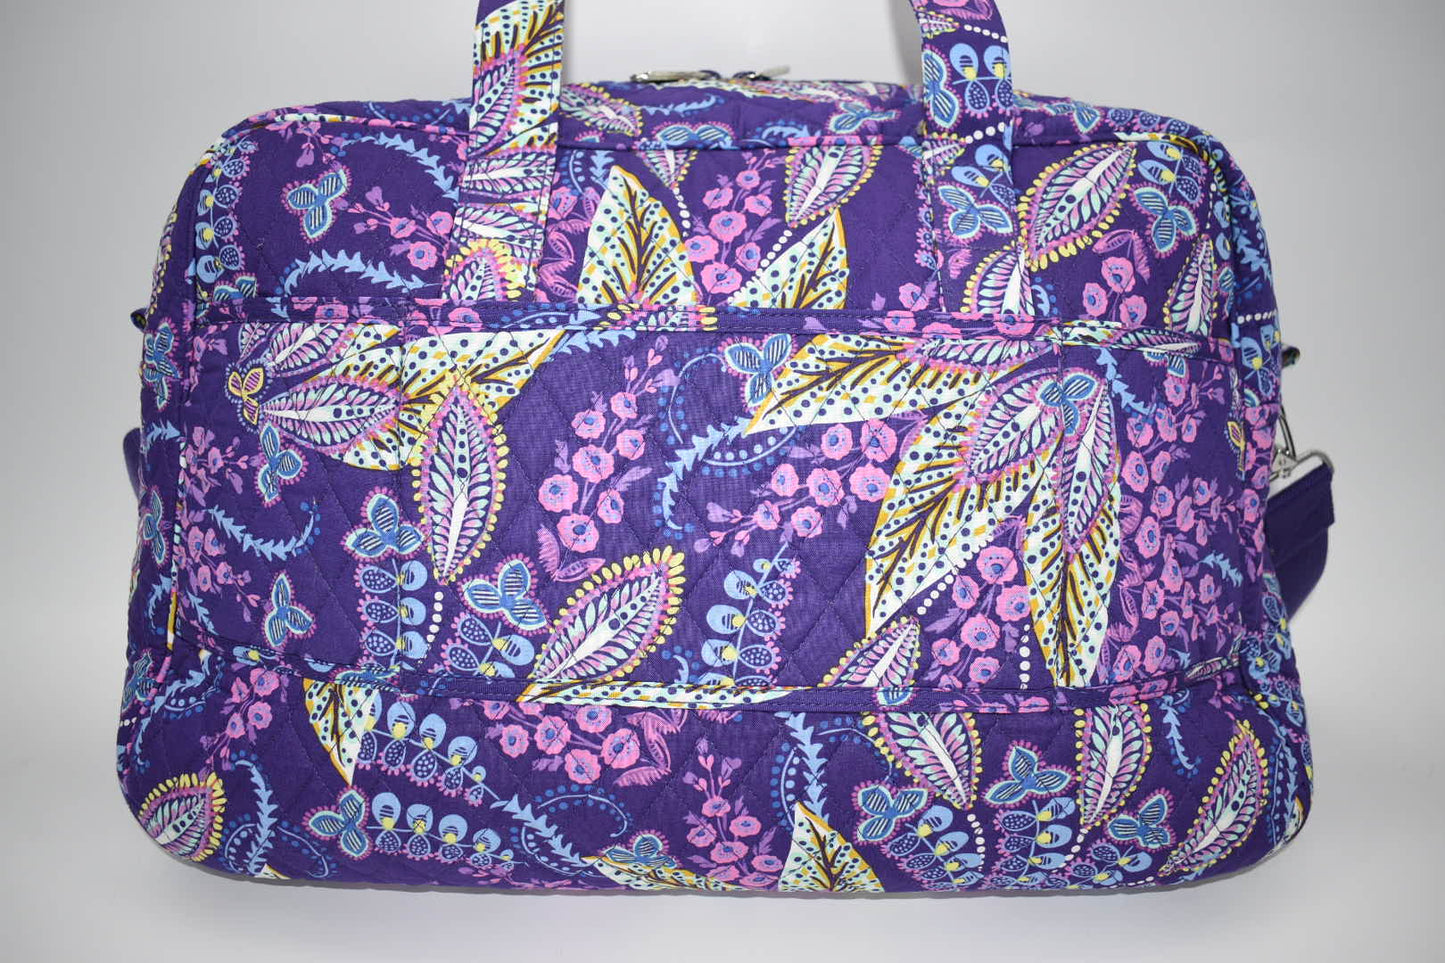 Vera Bradley Medium Traveler Weekender Bag in Batik Leaves Pattern